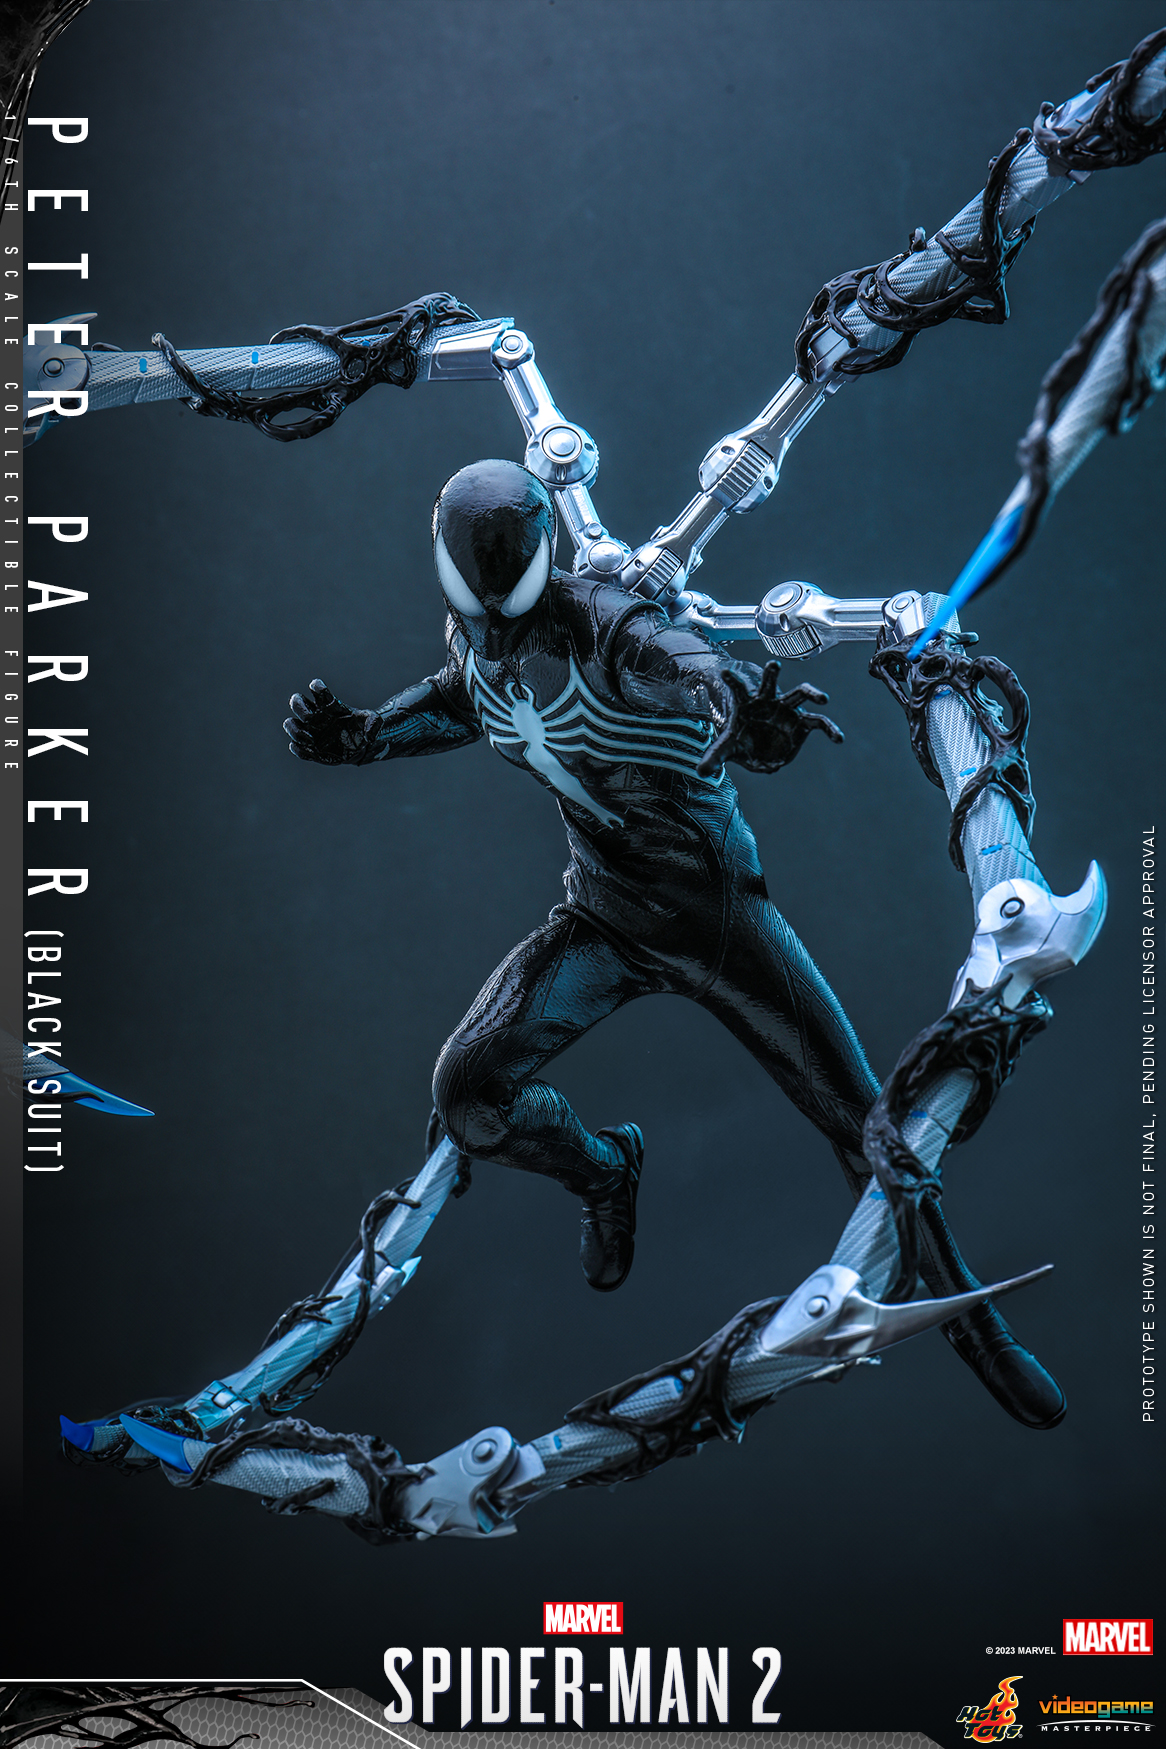 Spider-Man 2 Black Suit da Hot Toys - Homem Aranha 2 do Playstation - Blog Farofeiros